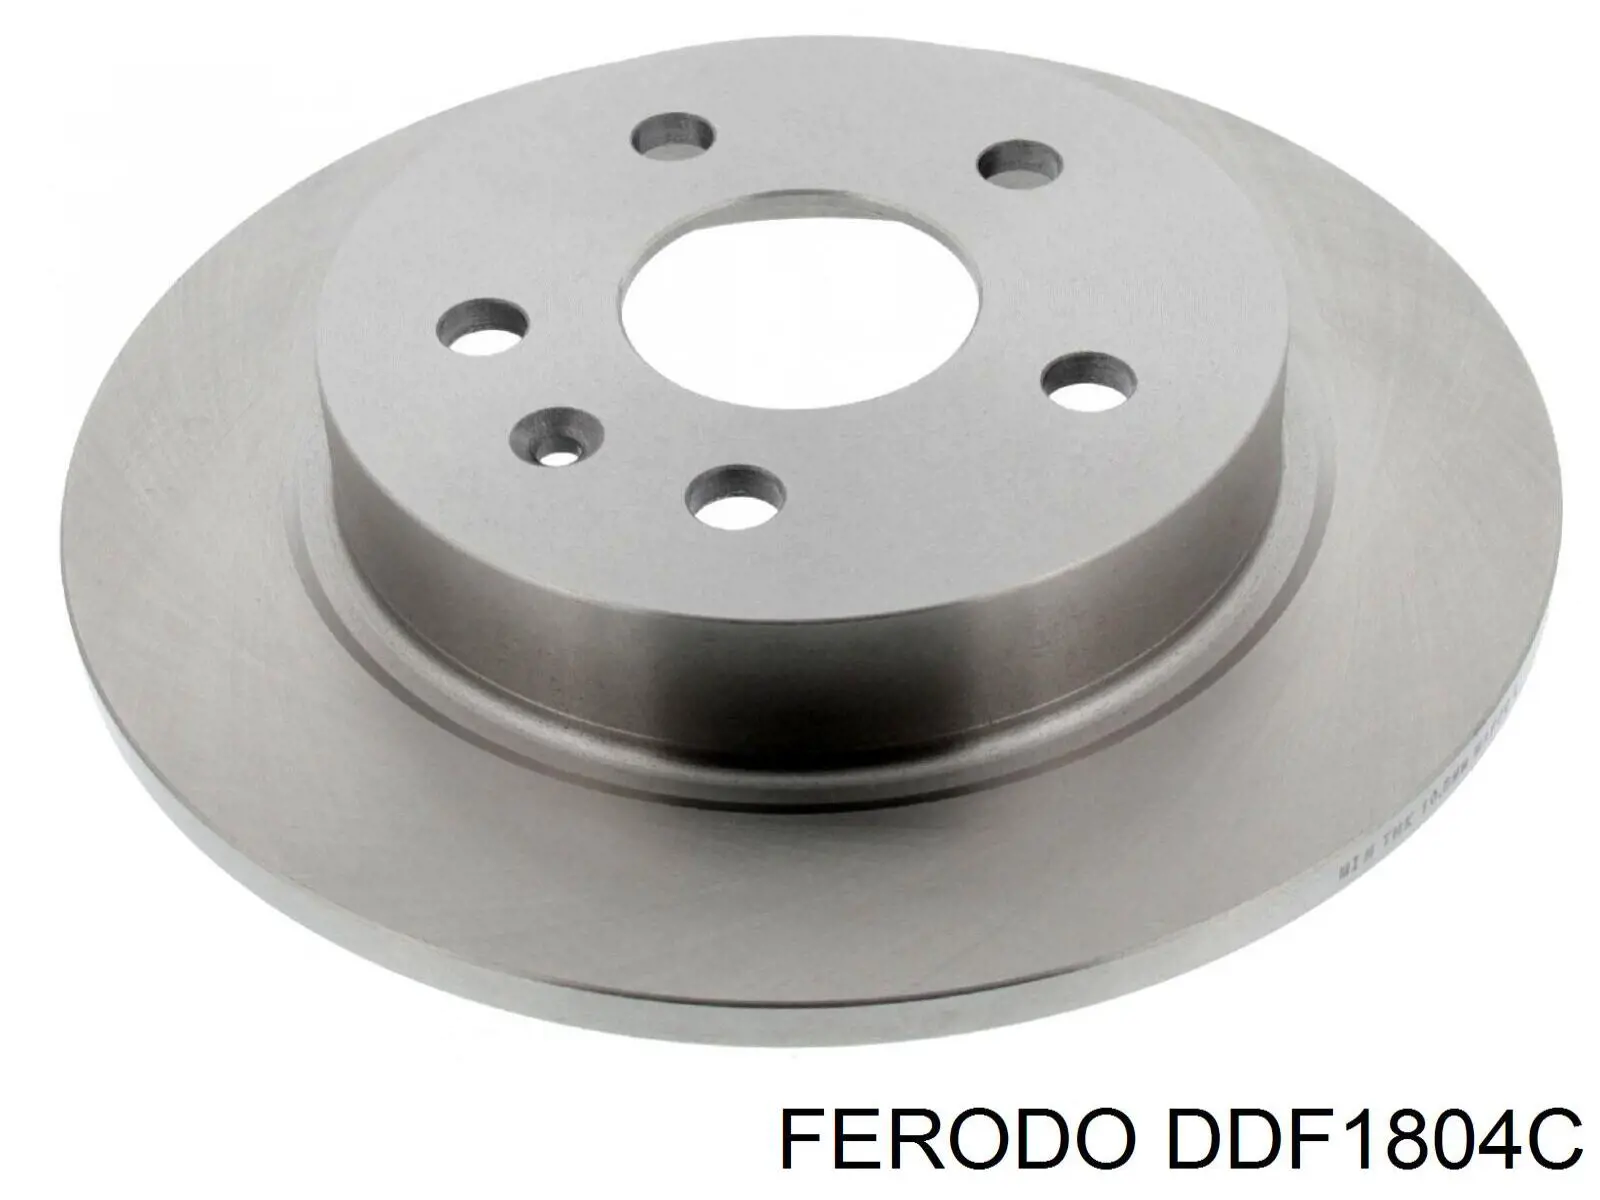 DDF1804C Ferodo disco do freio traseiro